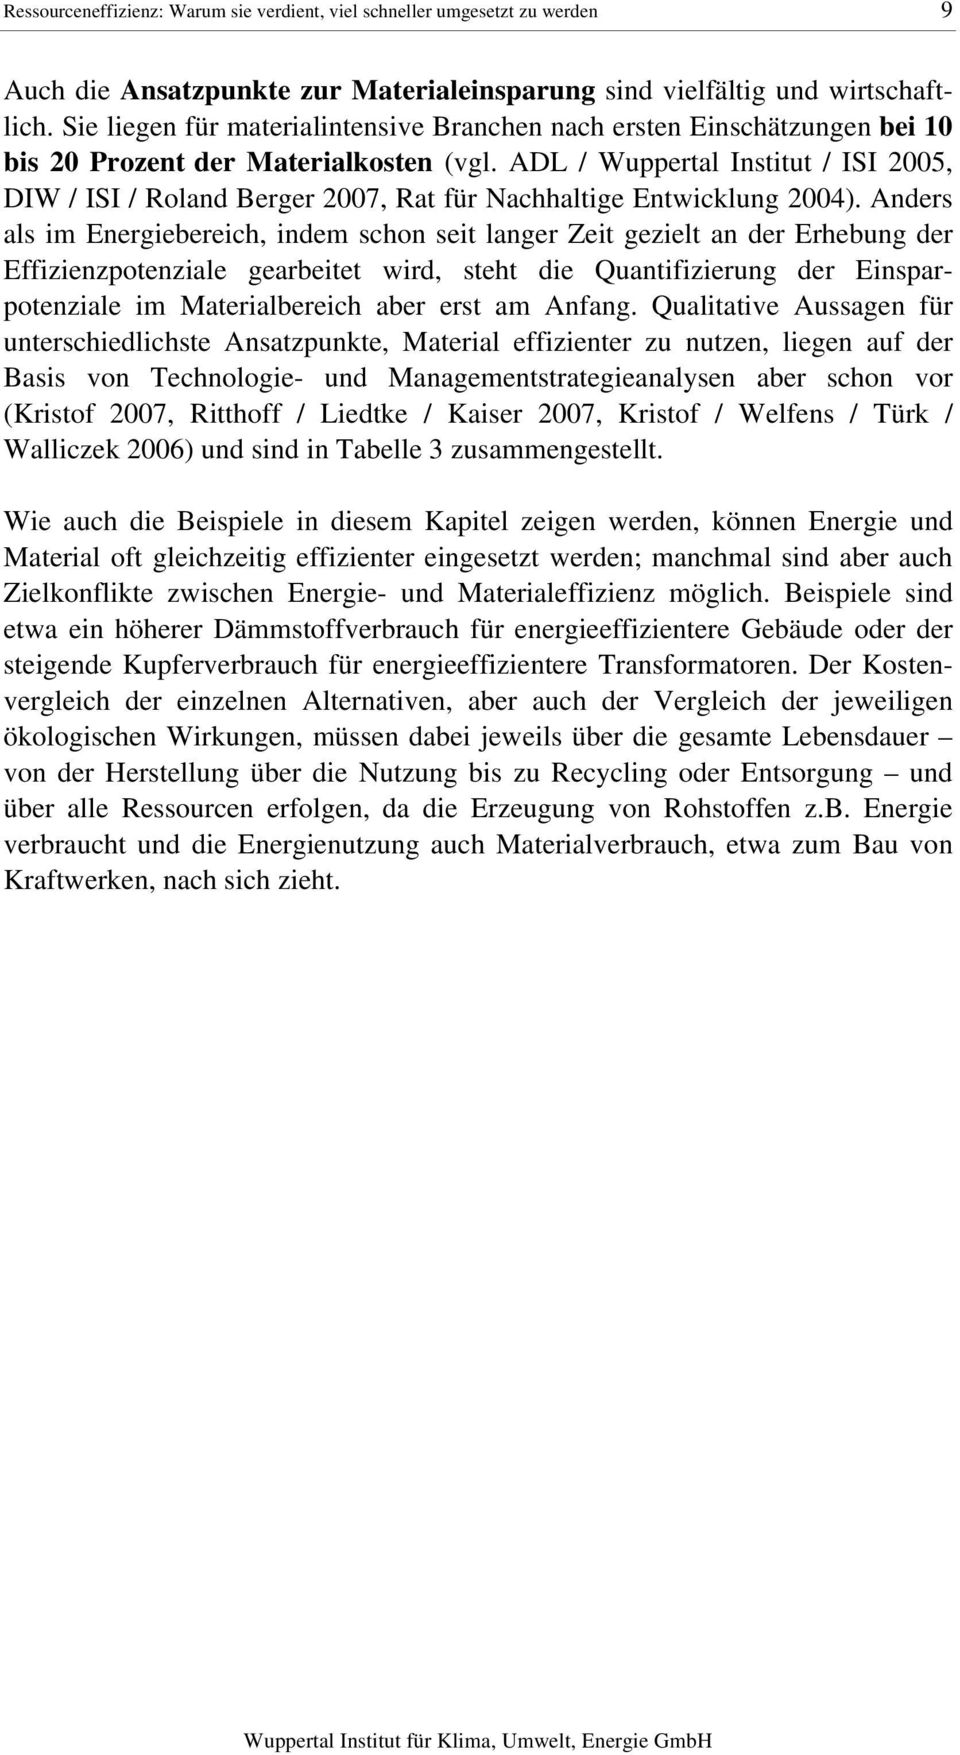 ADL / Wuppertal Institut / ISI 2005, DIW / ISI / Roland Berger 2007, Rat für Nachhaltige Entwicklung 2004).